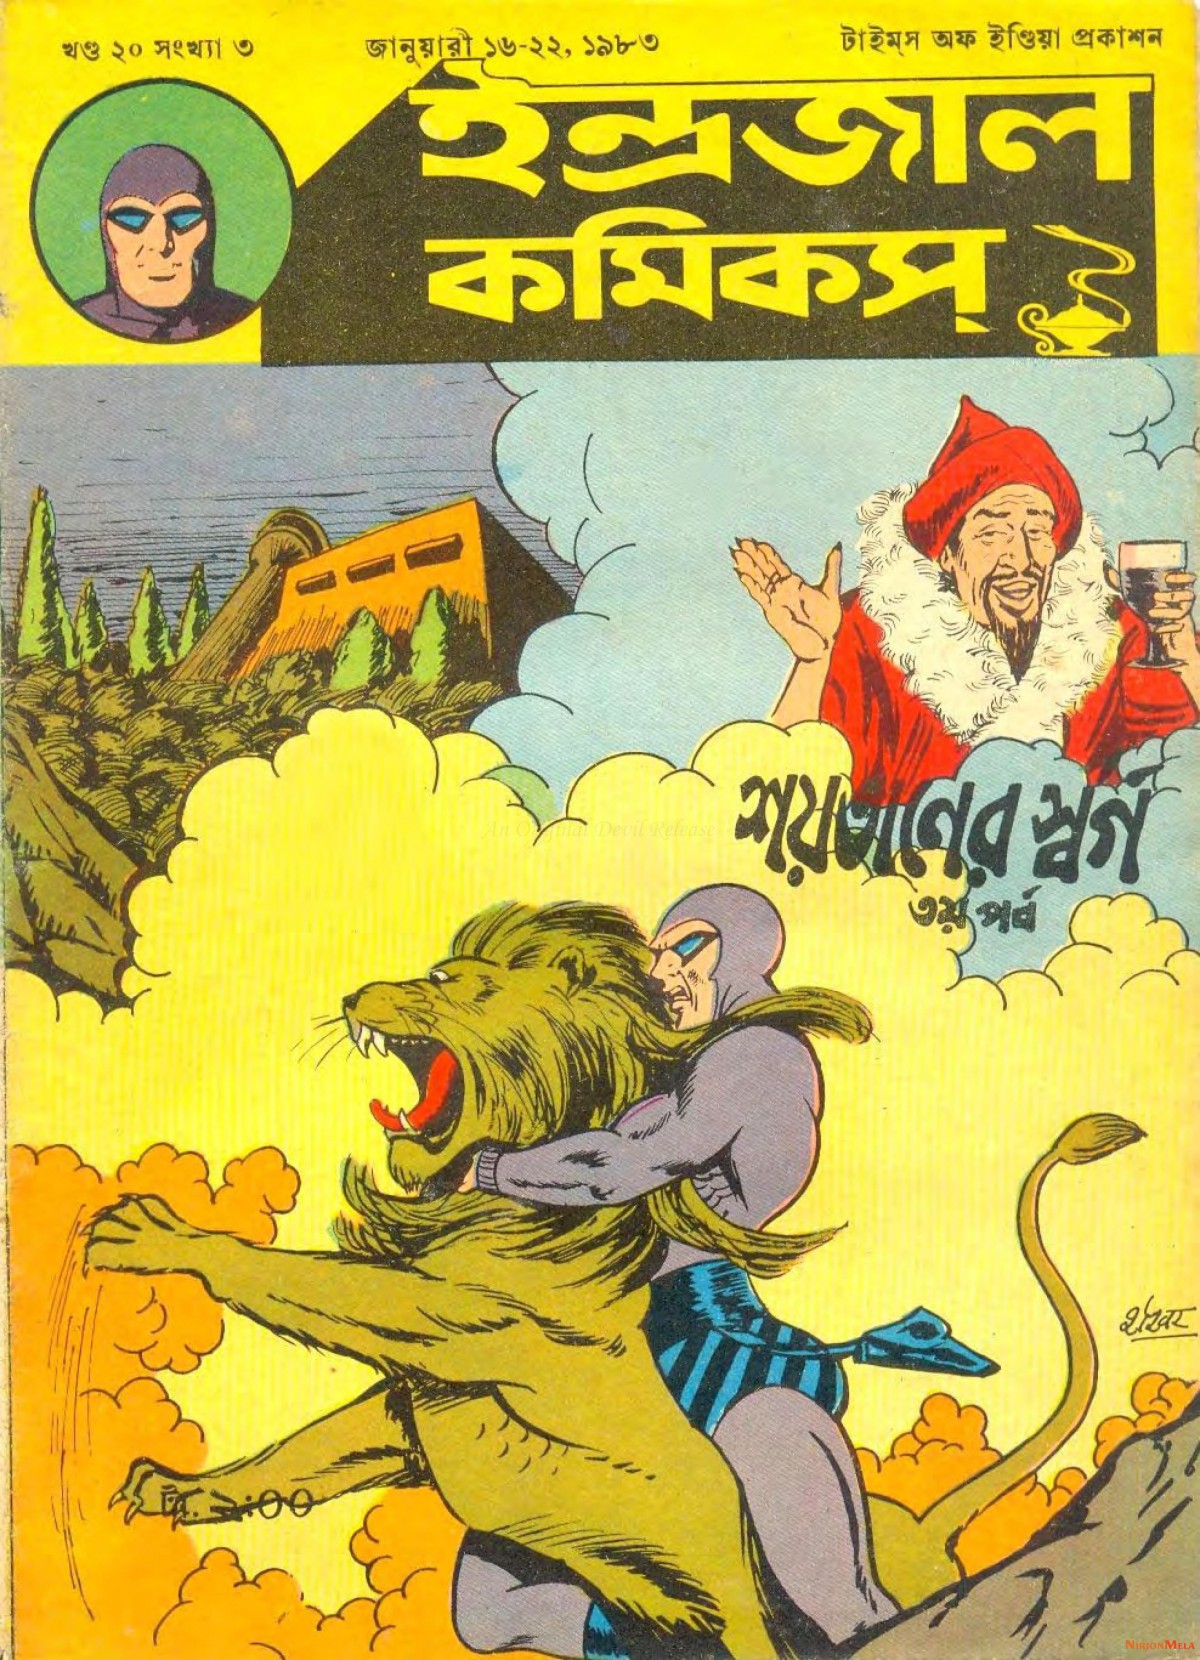 Indrajal-Comics-Saitaner-Swarga-Part-III-1.jpg